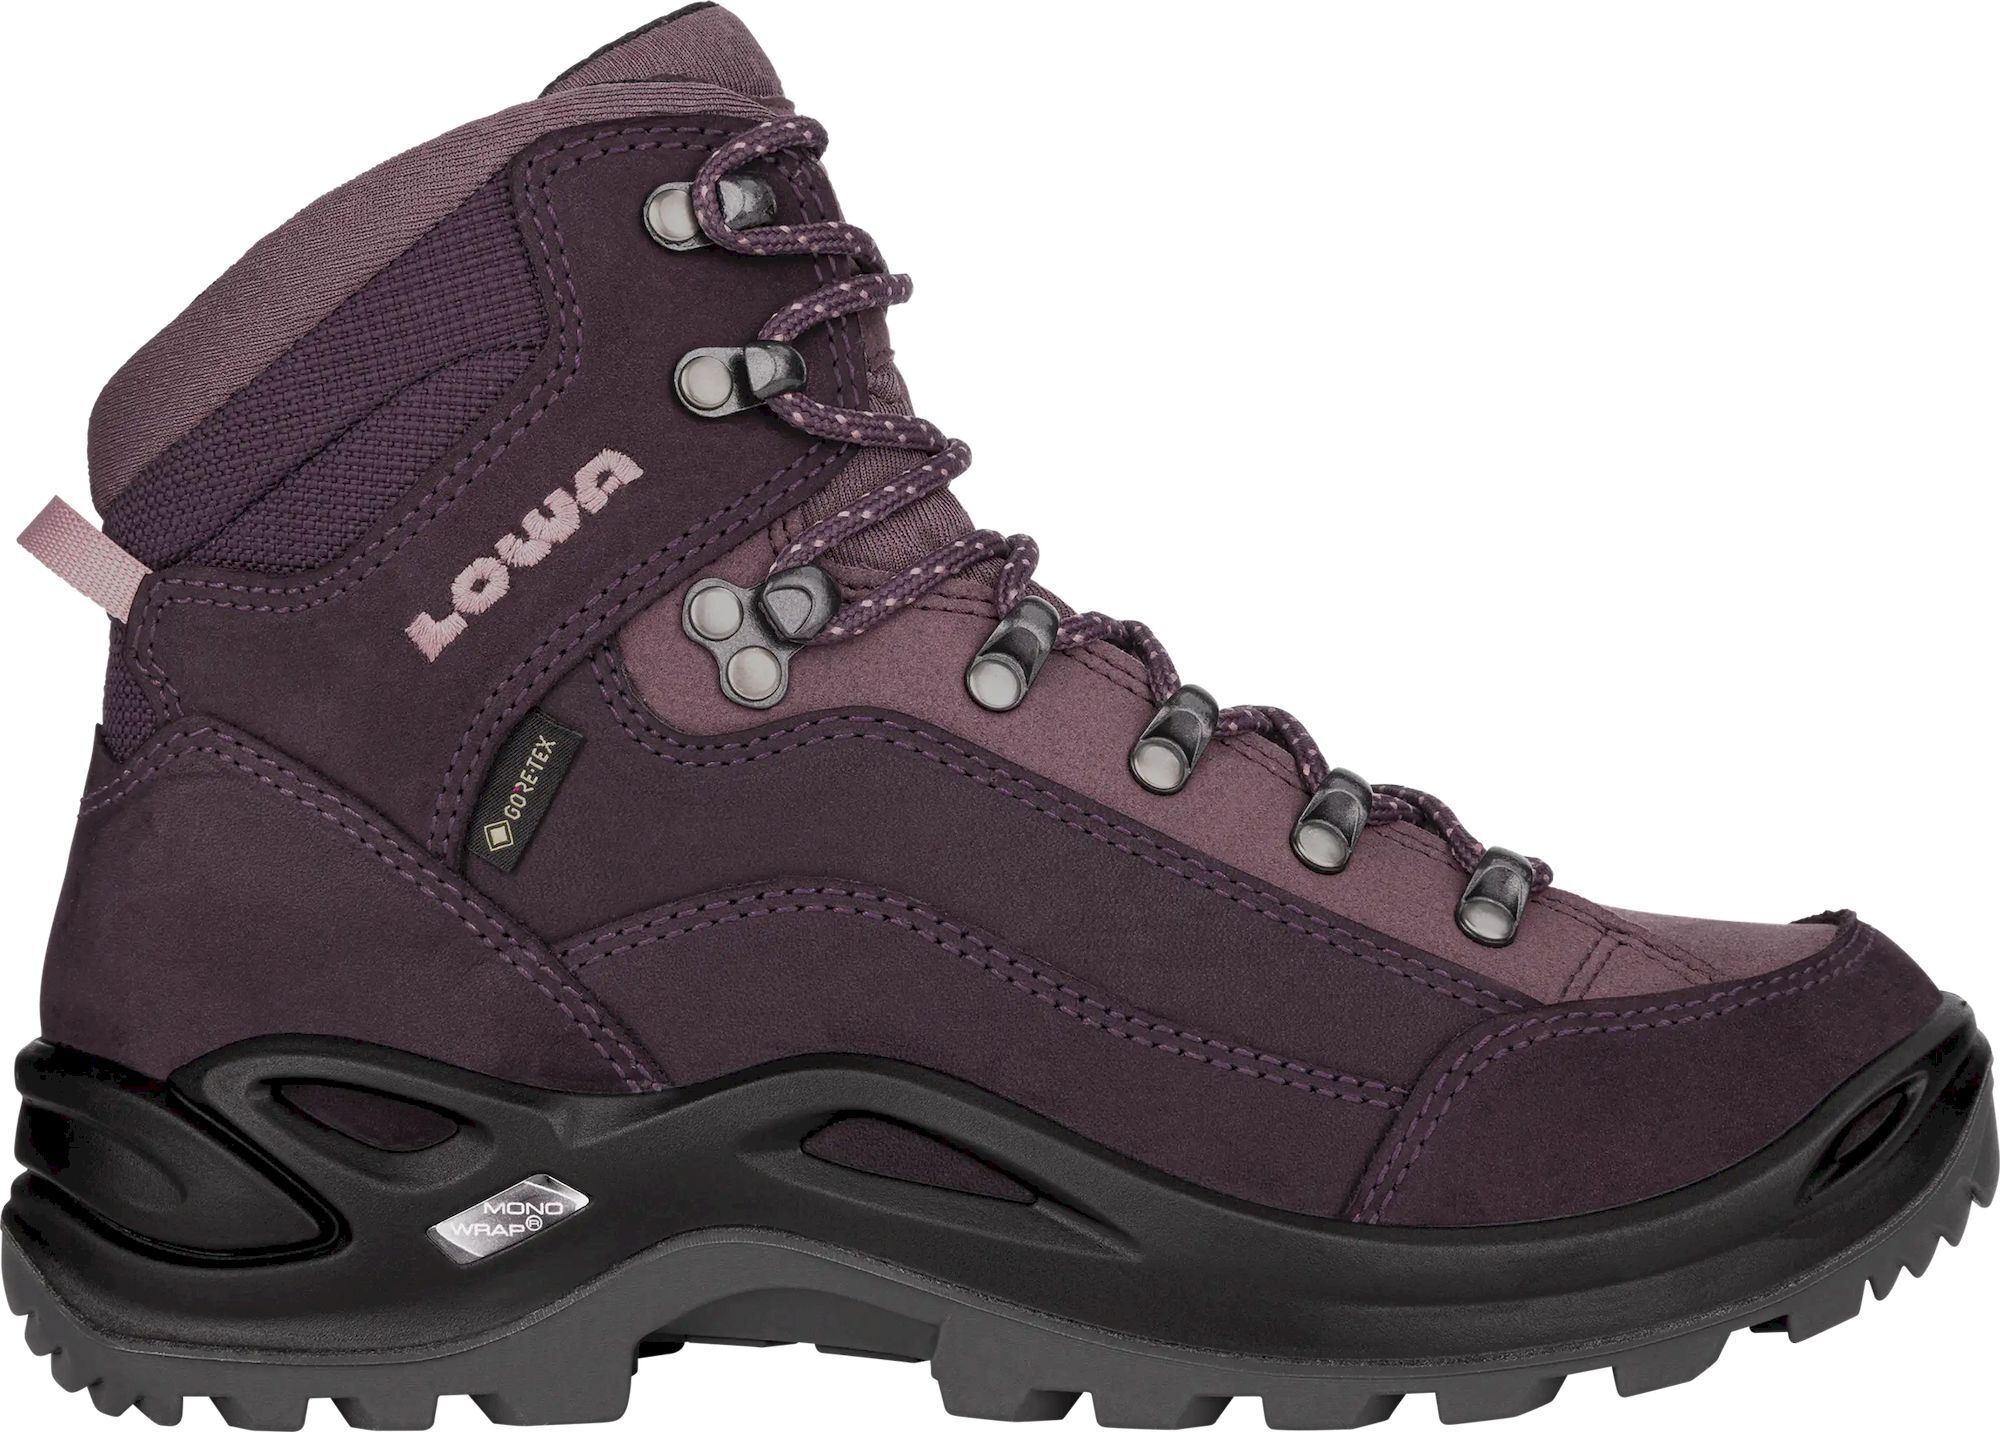 Lowa - Renegade GTX® Mid Ws - Zapatillas de trekking - Mujer